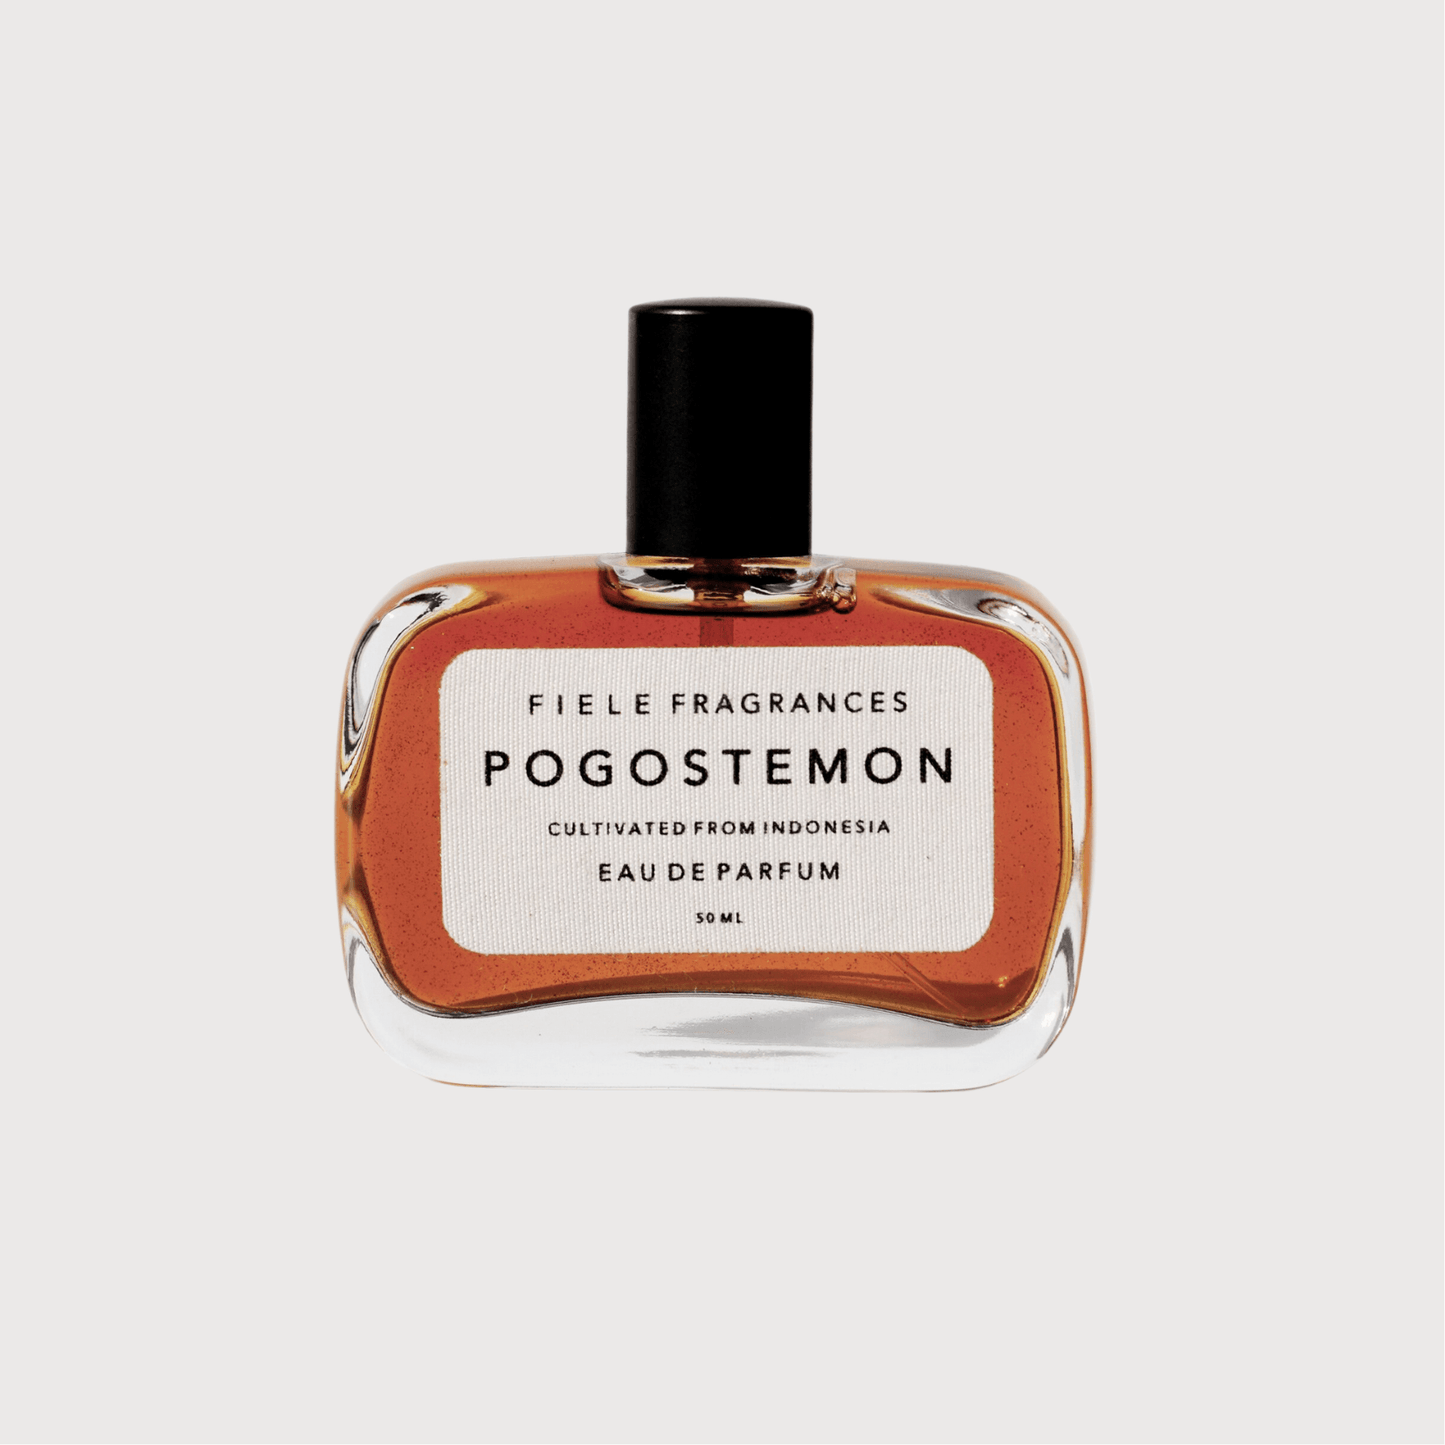 Pogostemon eau de parfum by Fiele Fragrances - Haven